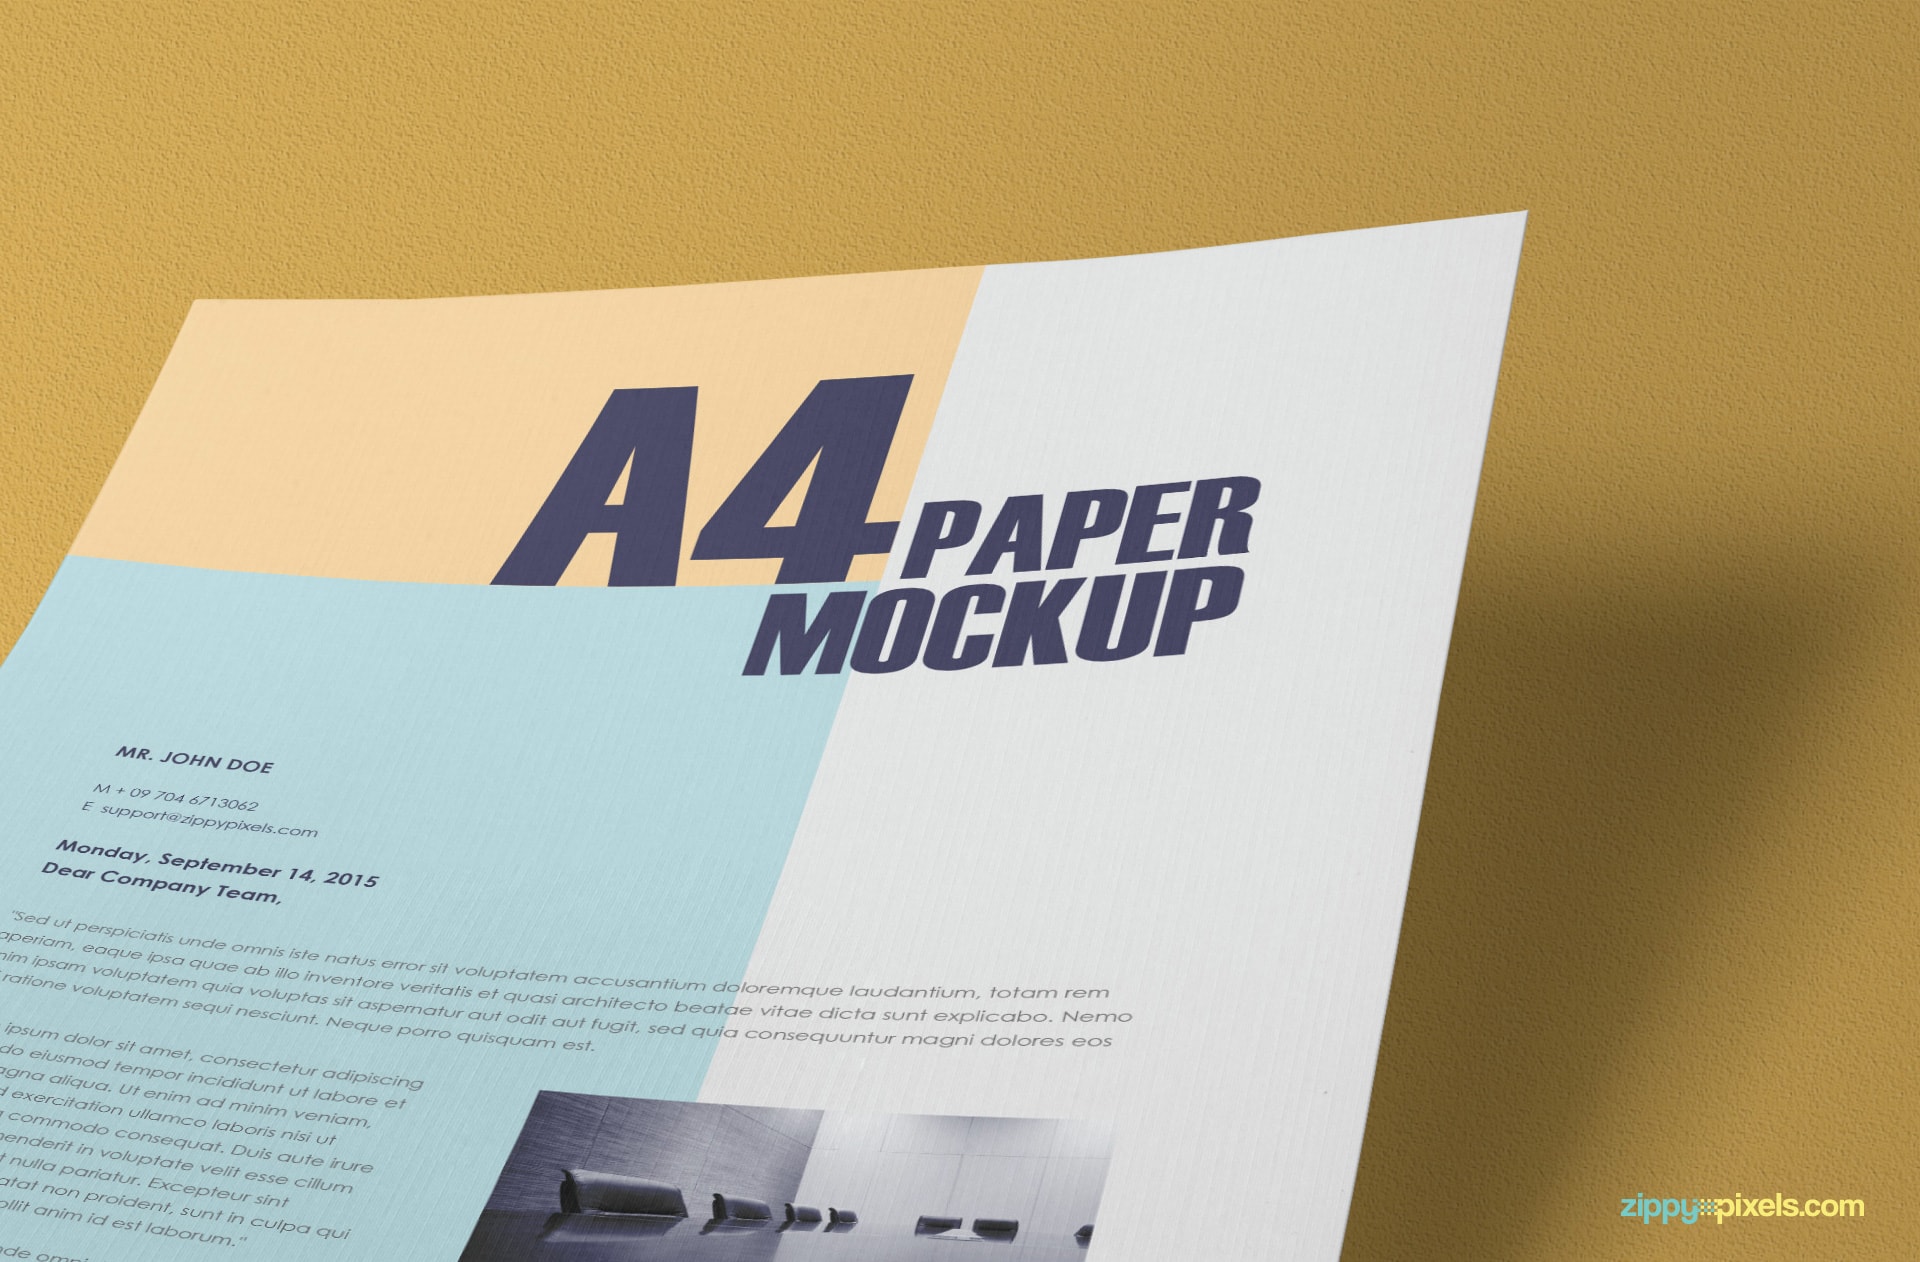 Download Free A4 Paper Mockup Psd Zippypixels PSD Mockup Templates